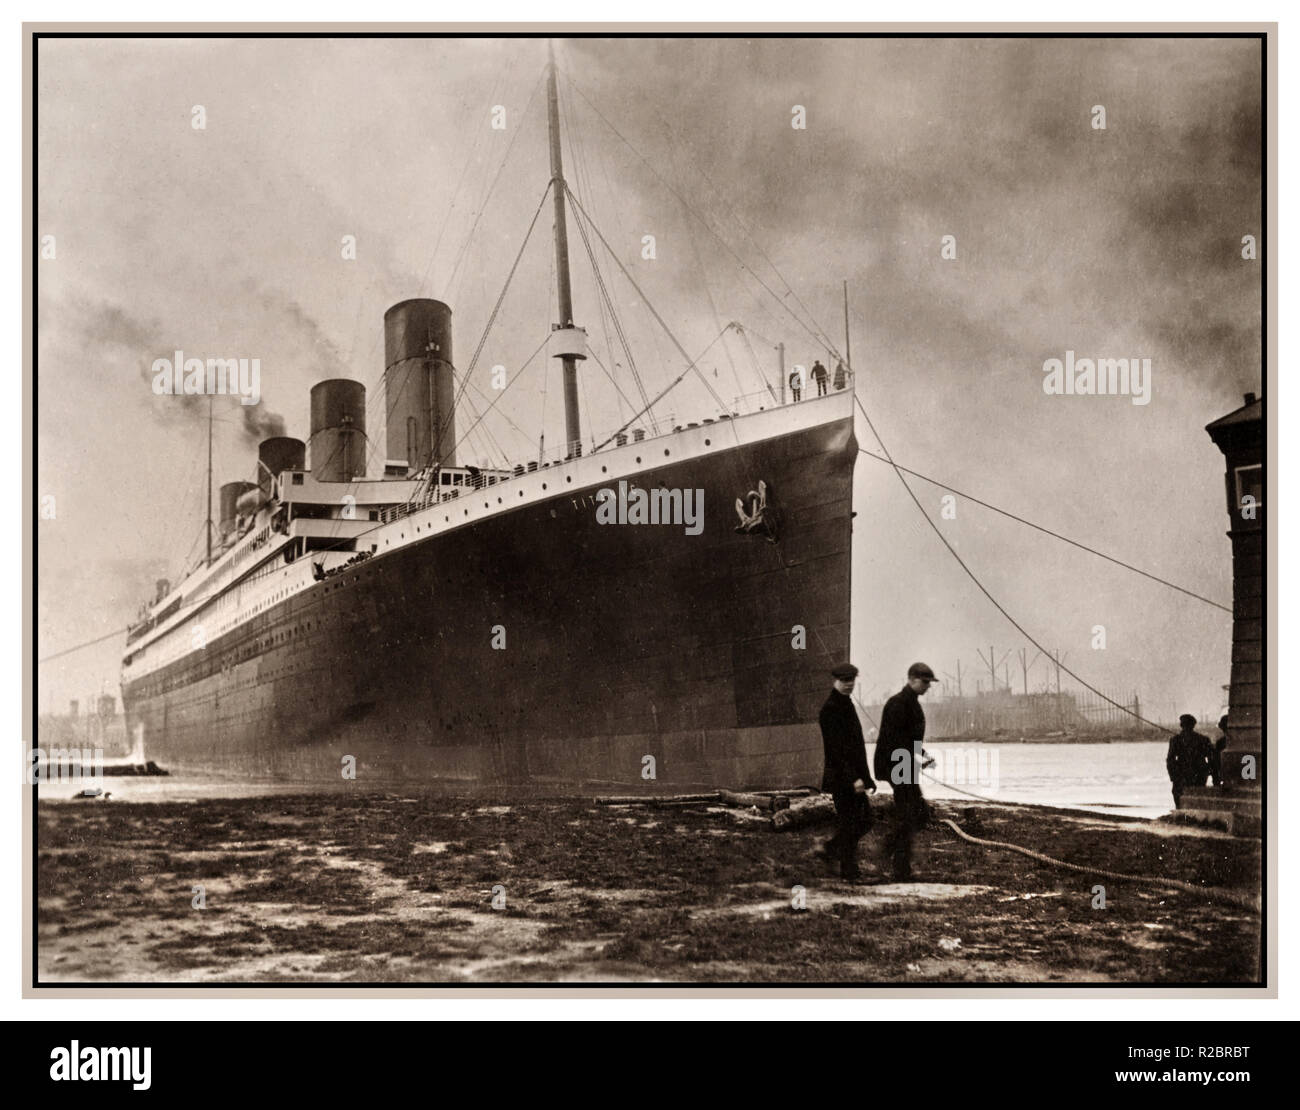 TITANIC 1912 RMS TITANIC verlässt Harland & Wolff Werften April 2. 1912 düsteres Bild der Titanic, die sich abwirft Auf ihrer schicksalhaften tragischen Jungfernfahrt Stockfoto